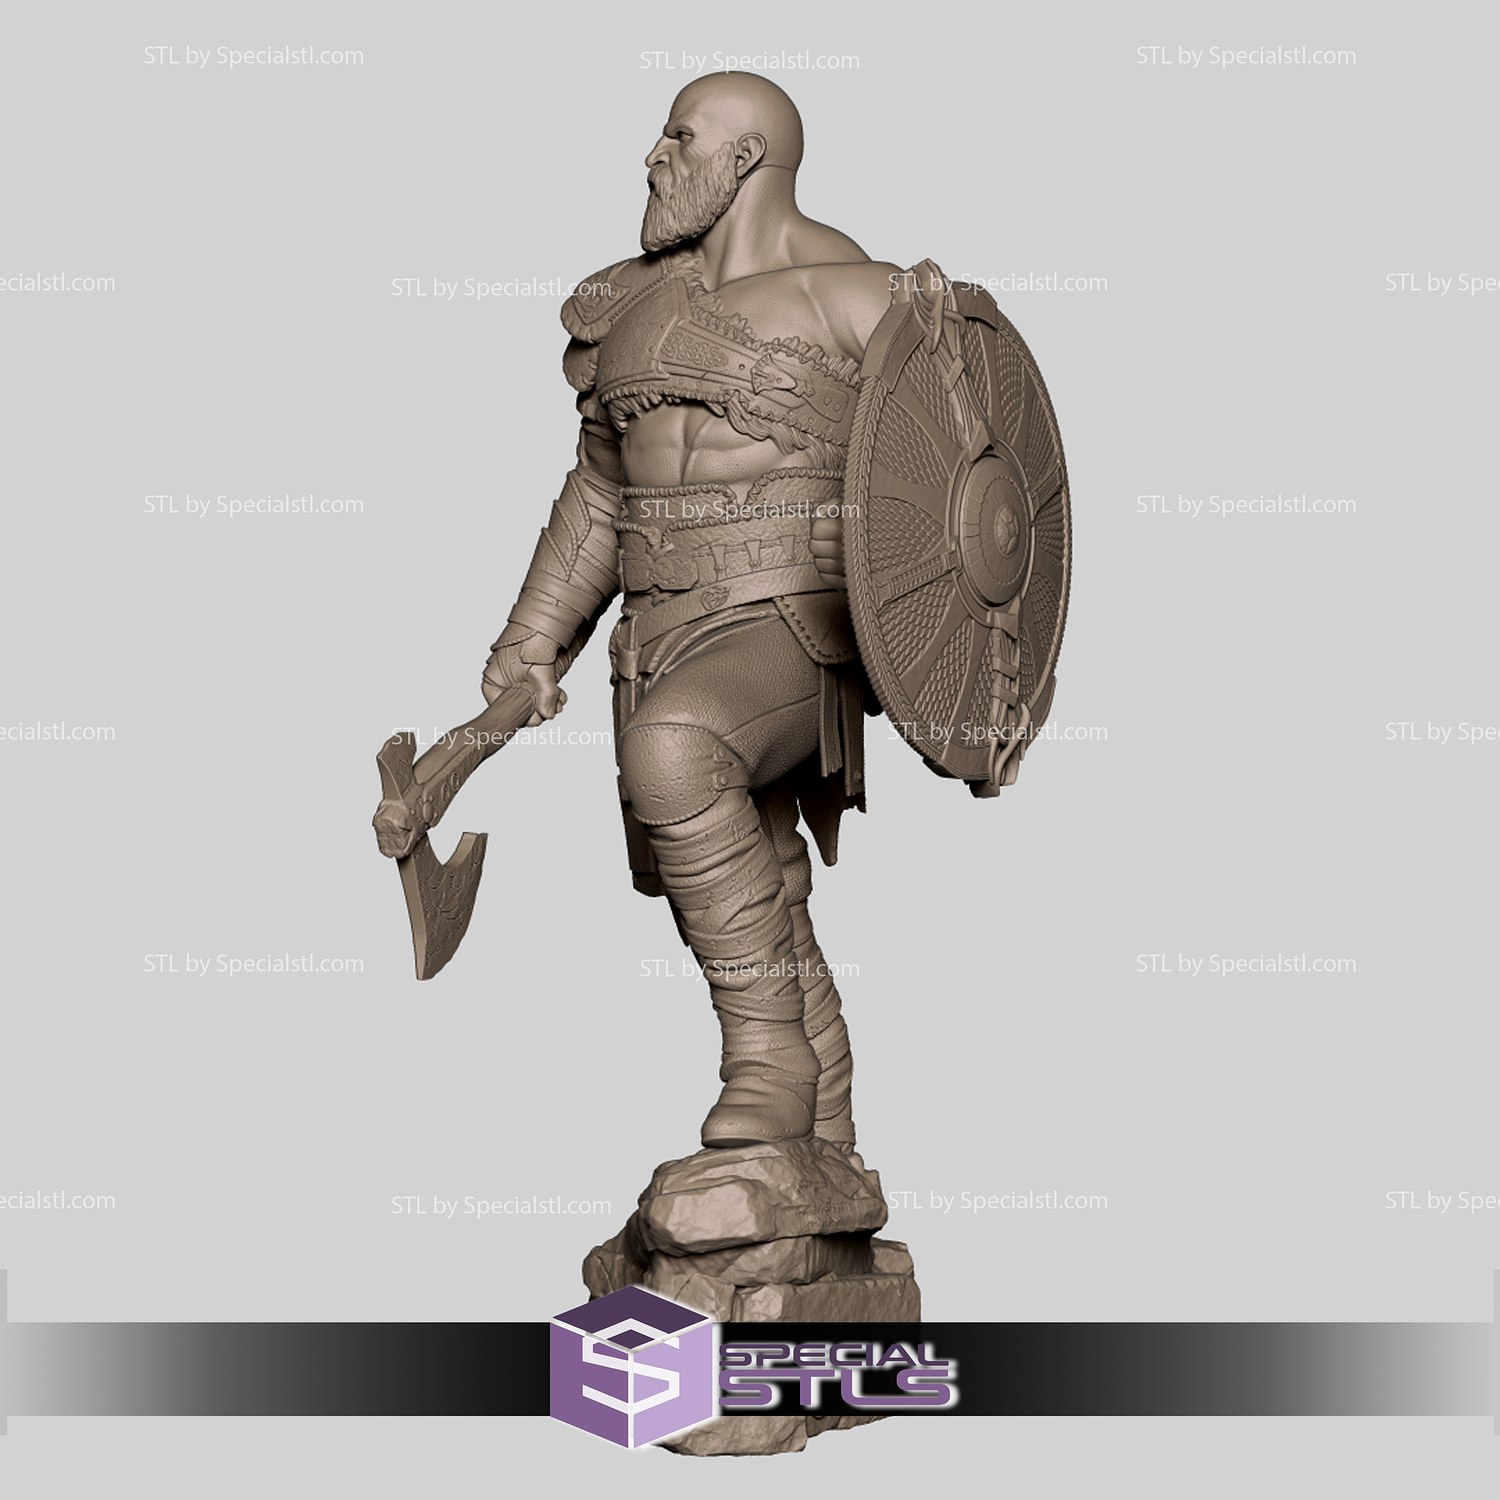 Kratos Standing V4 3D Printing Figurine God of War STL Files